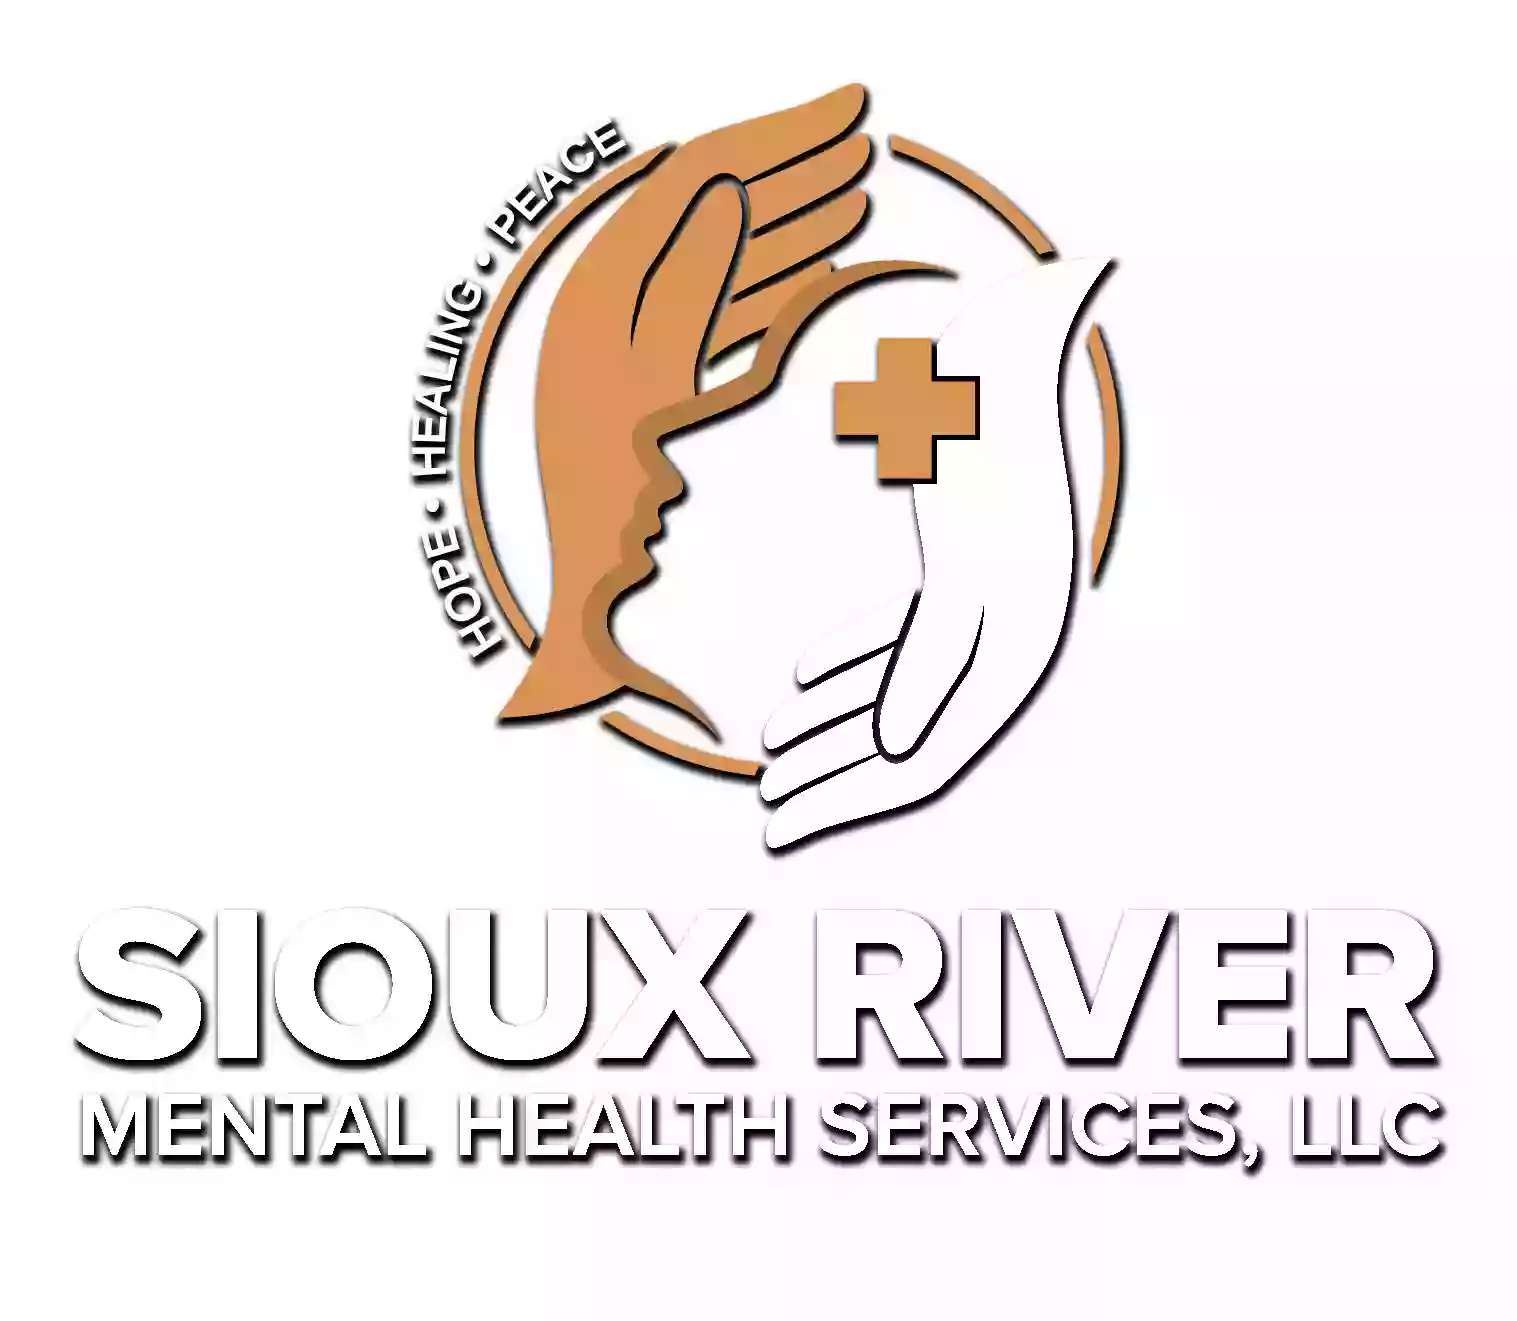 Sioux River Mental Health Services, LLC